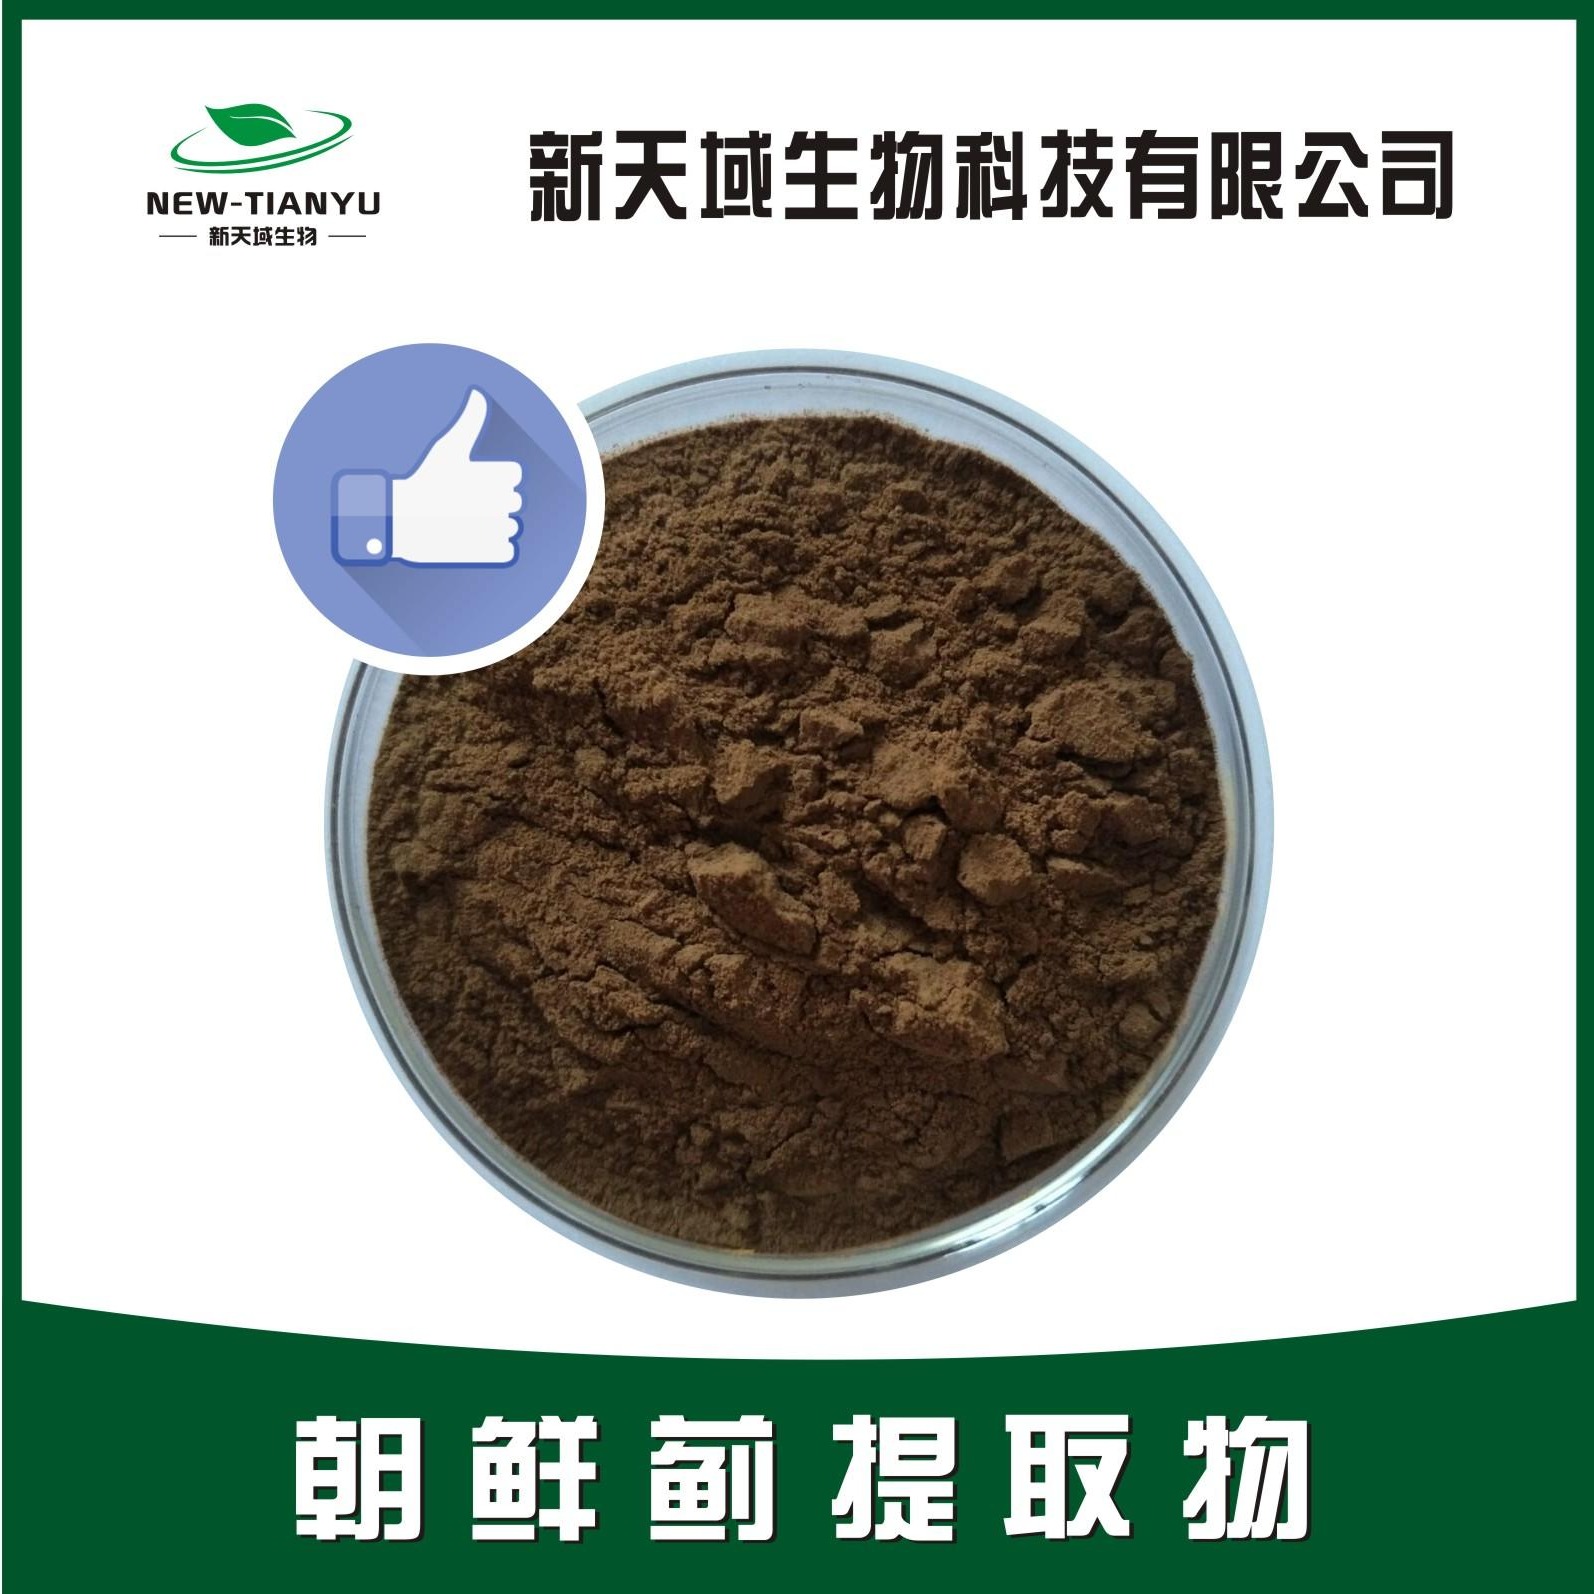 陕西新天域生物 朝鲜蓟提取物 洋蓟素5% 洋蓟酸及绿原酸提取物